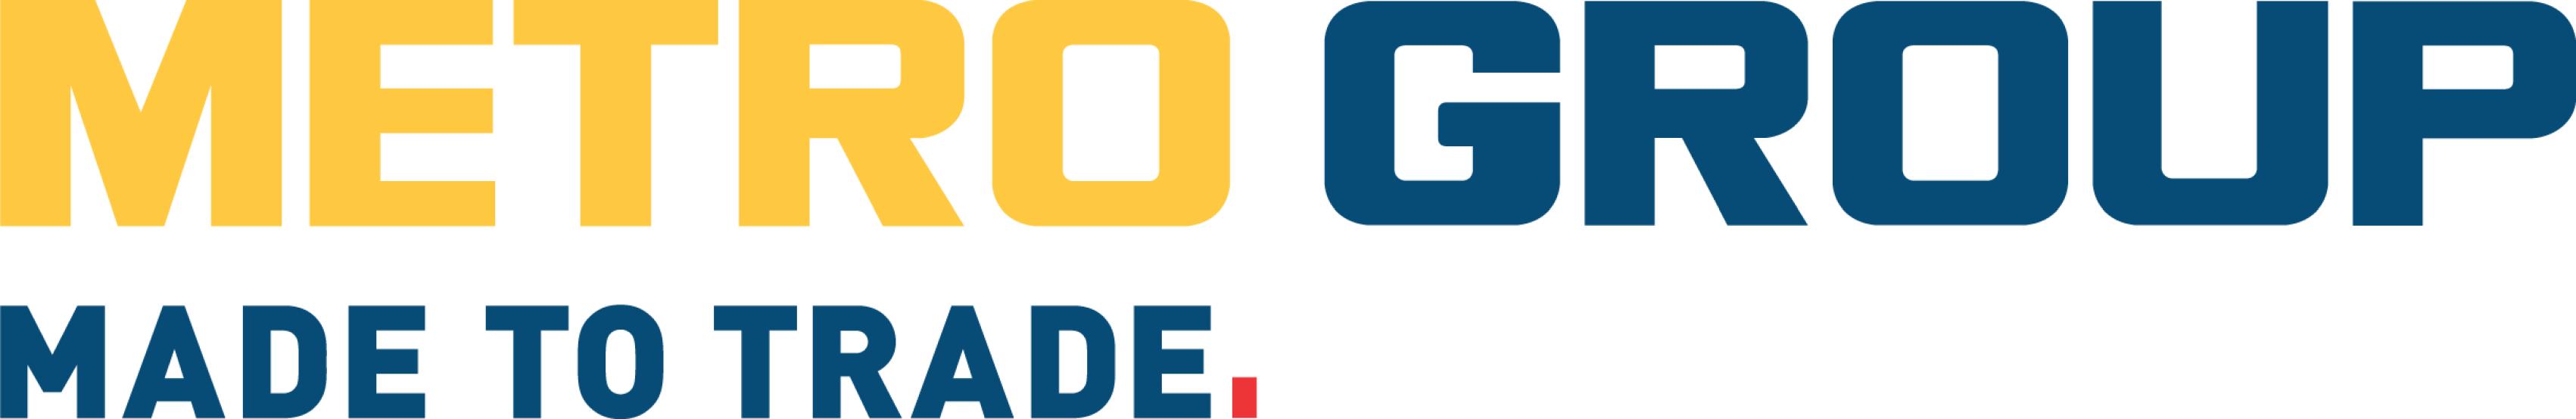 Metro AG Logo [EPS-PDF Files]